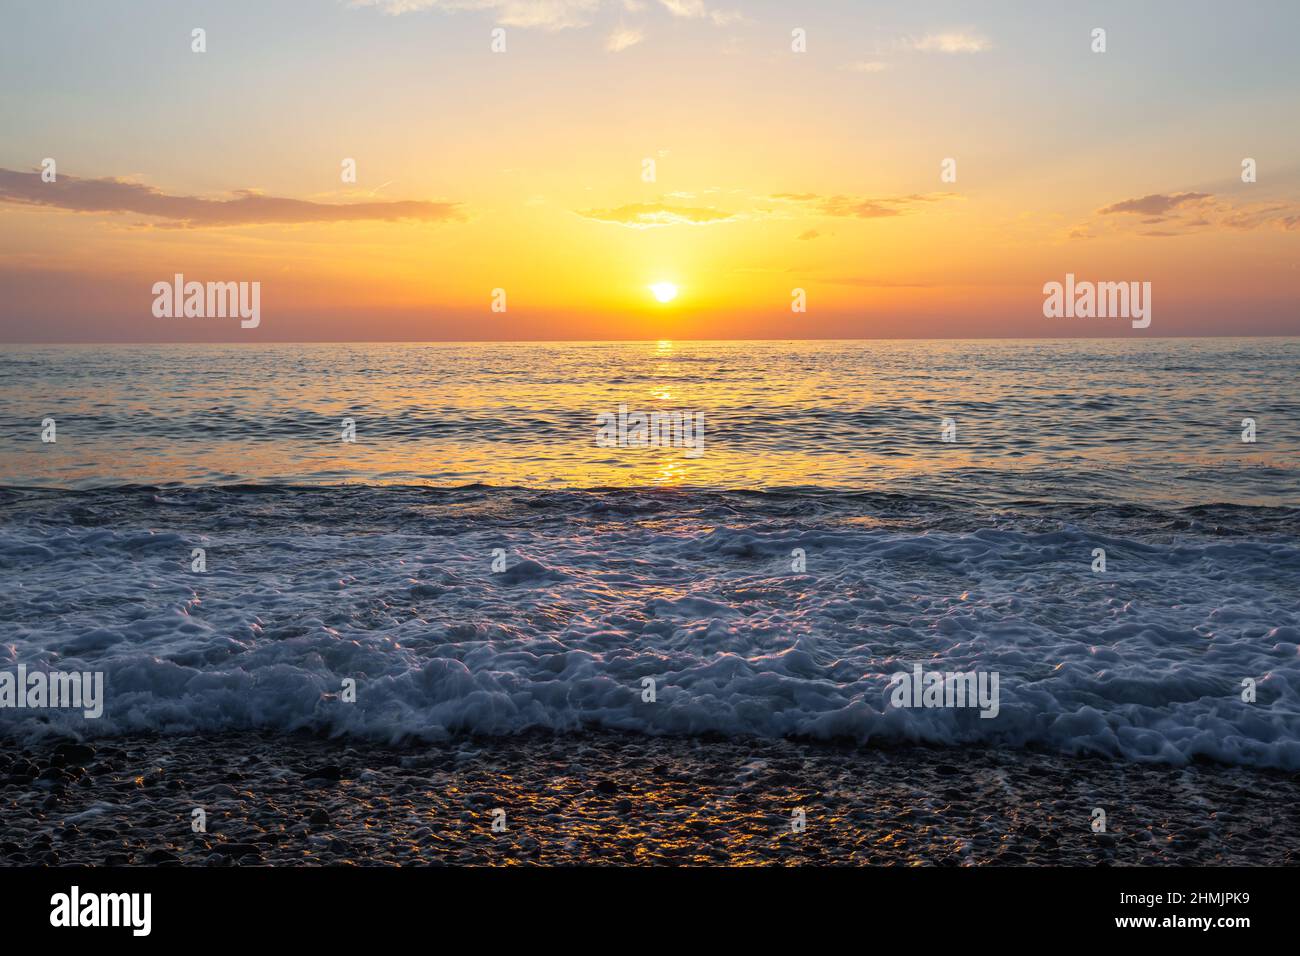 Sonnenaufgang am Meer. Wunderschöne Aussicht auf die Seeraulandschaft im Sommer. Unglaublicher Sonnenaufgang. Morgenlandschaft. Wellen mit Schaum. Romantische Orte zum Entspannen. Stockfoto